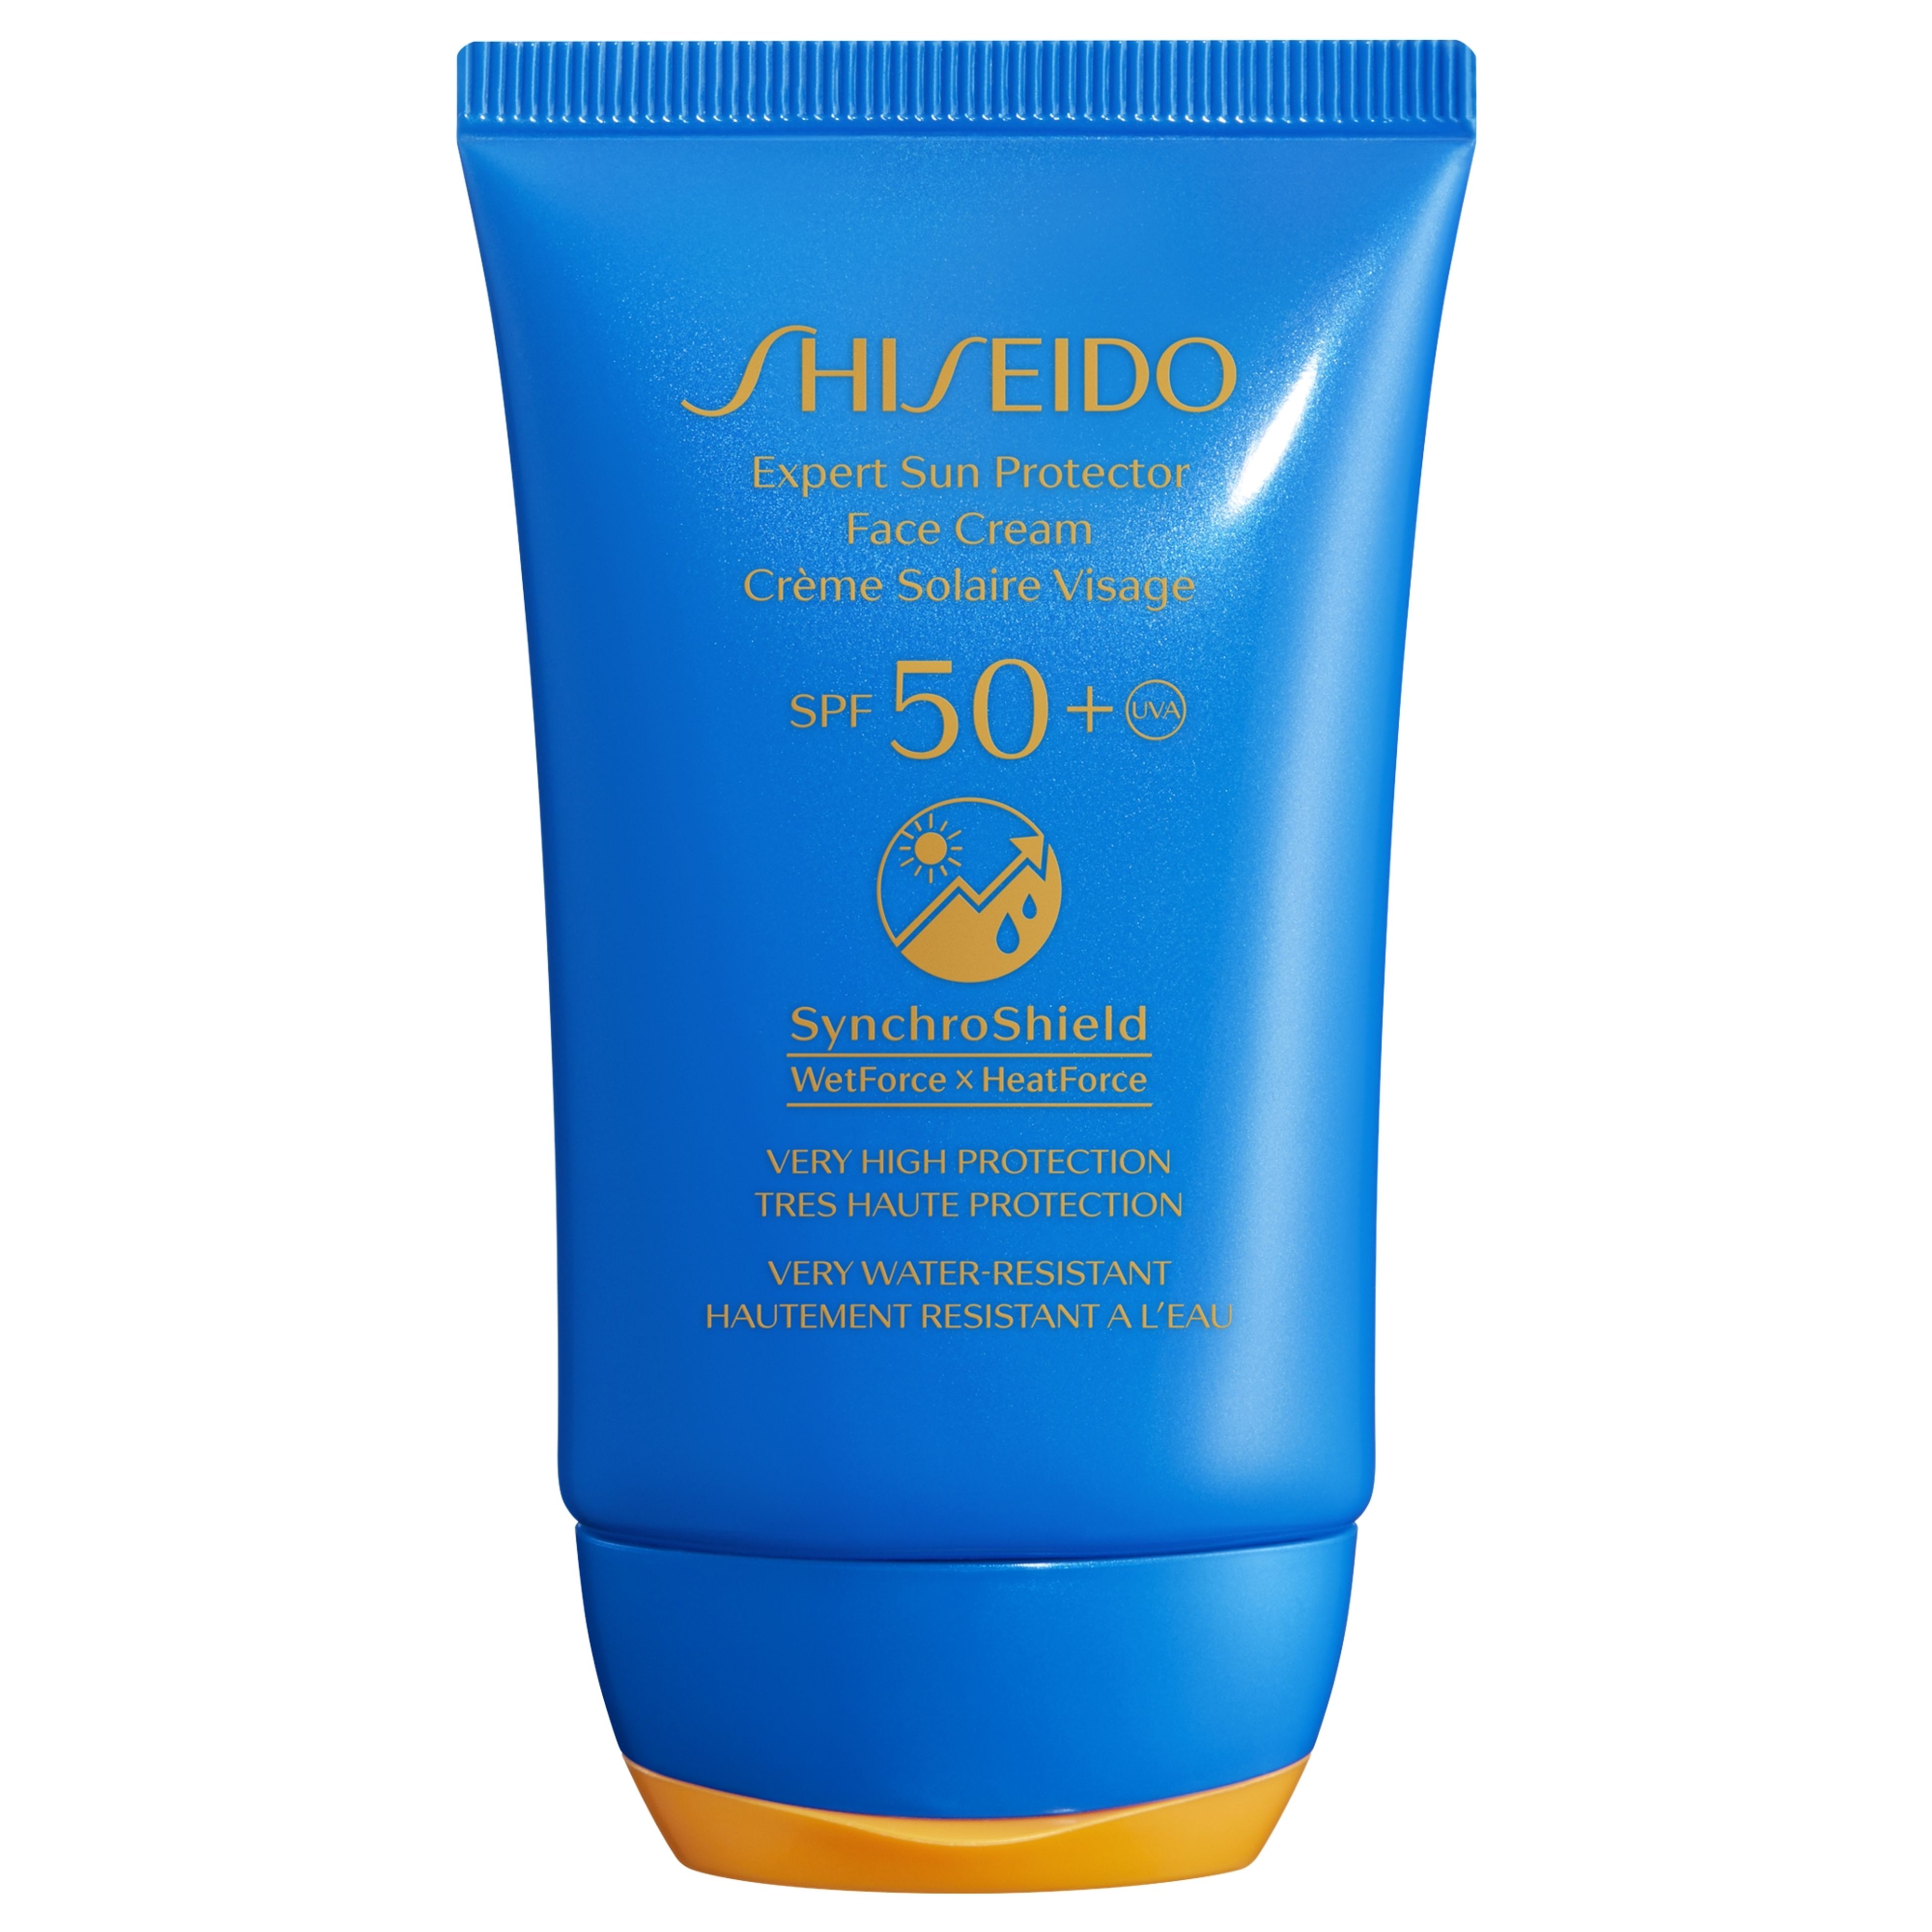 Shiseido Expert Sun Protector
face Cream 
spf50+ 1